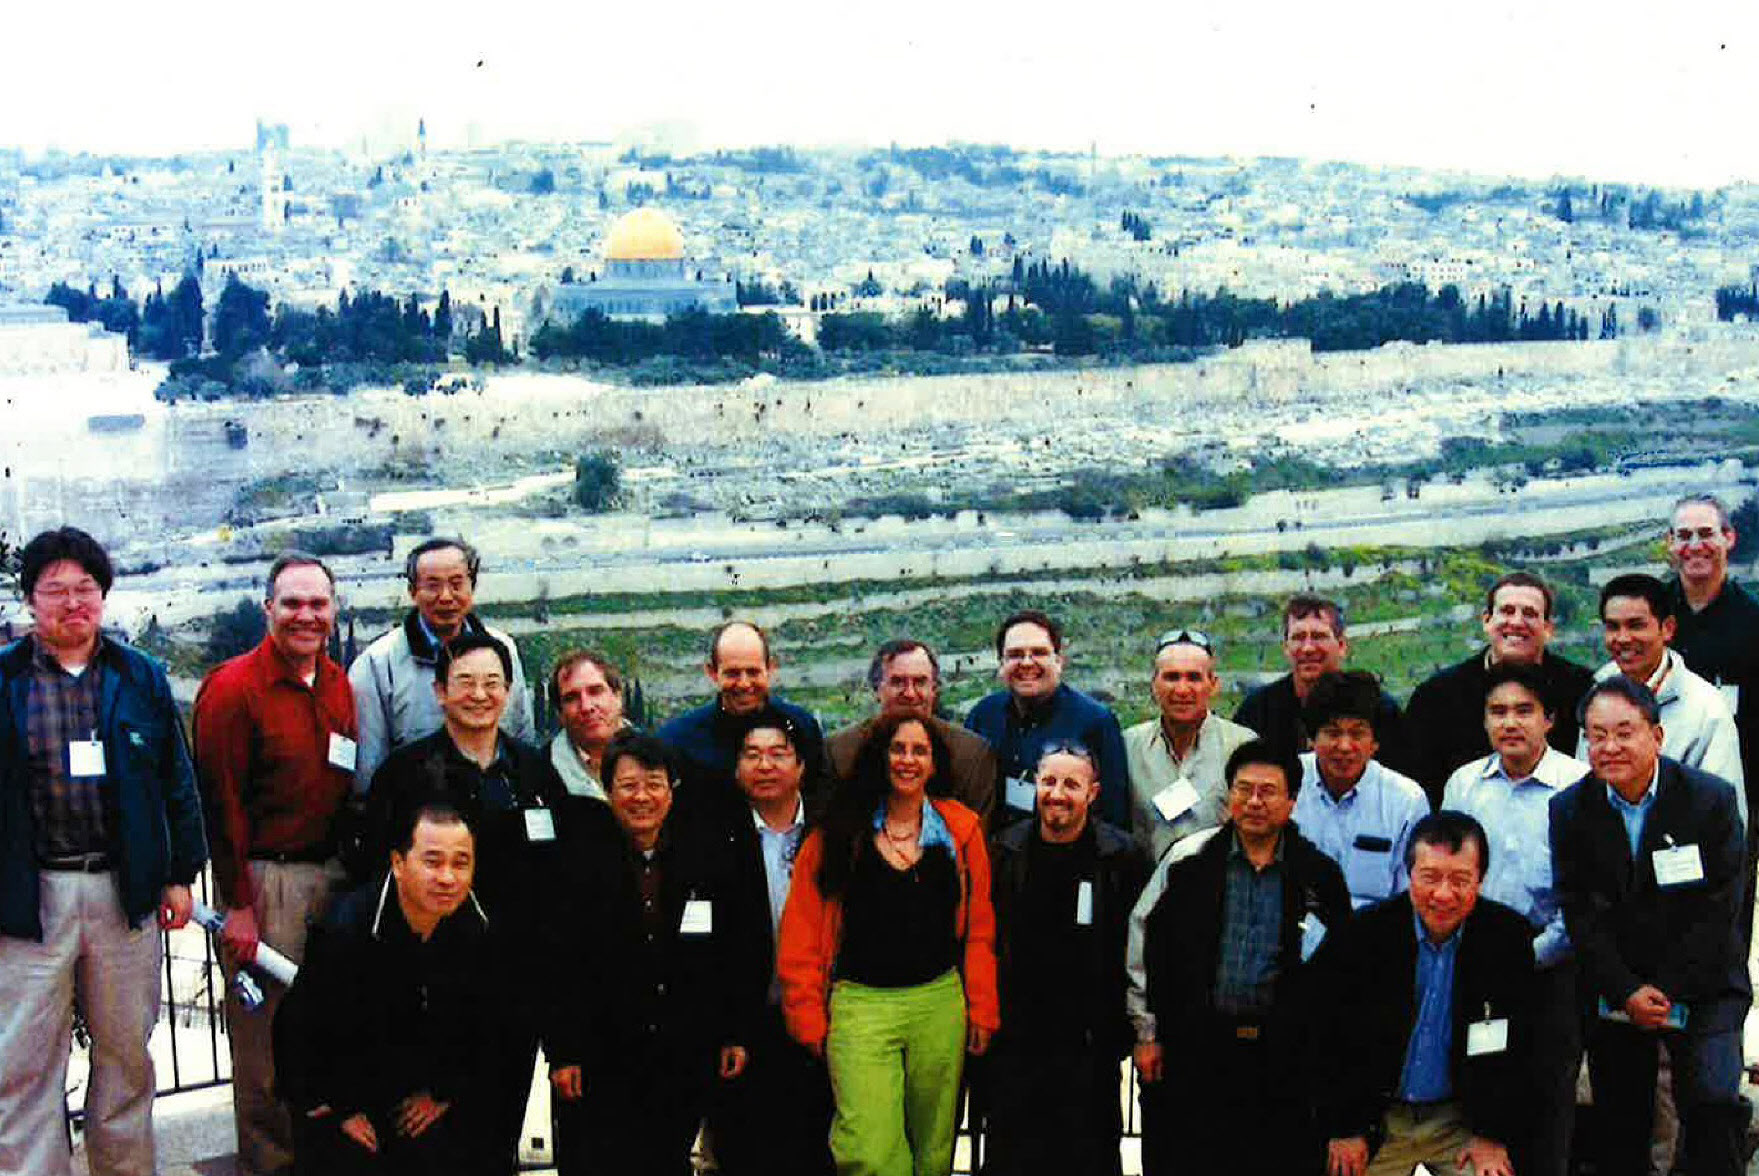 イスラエルでの顧客サポートも経験した（手前左から3番目）
